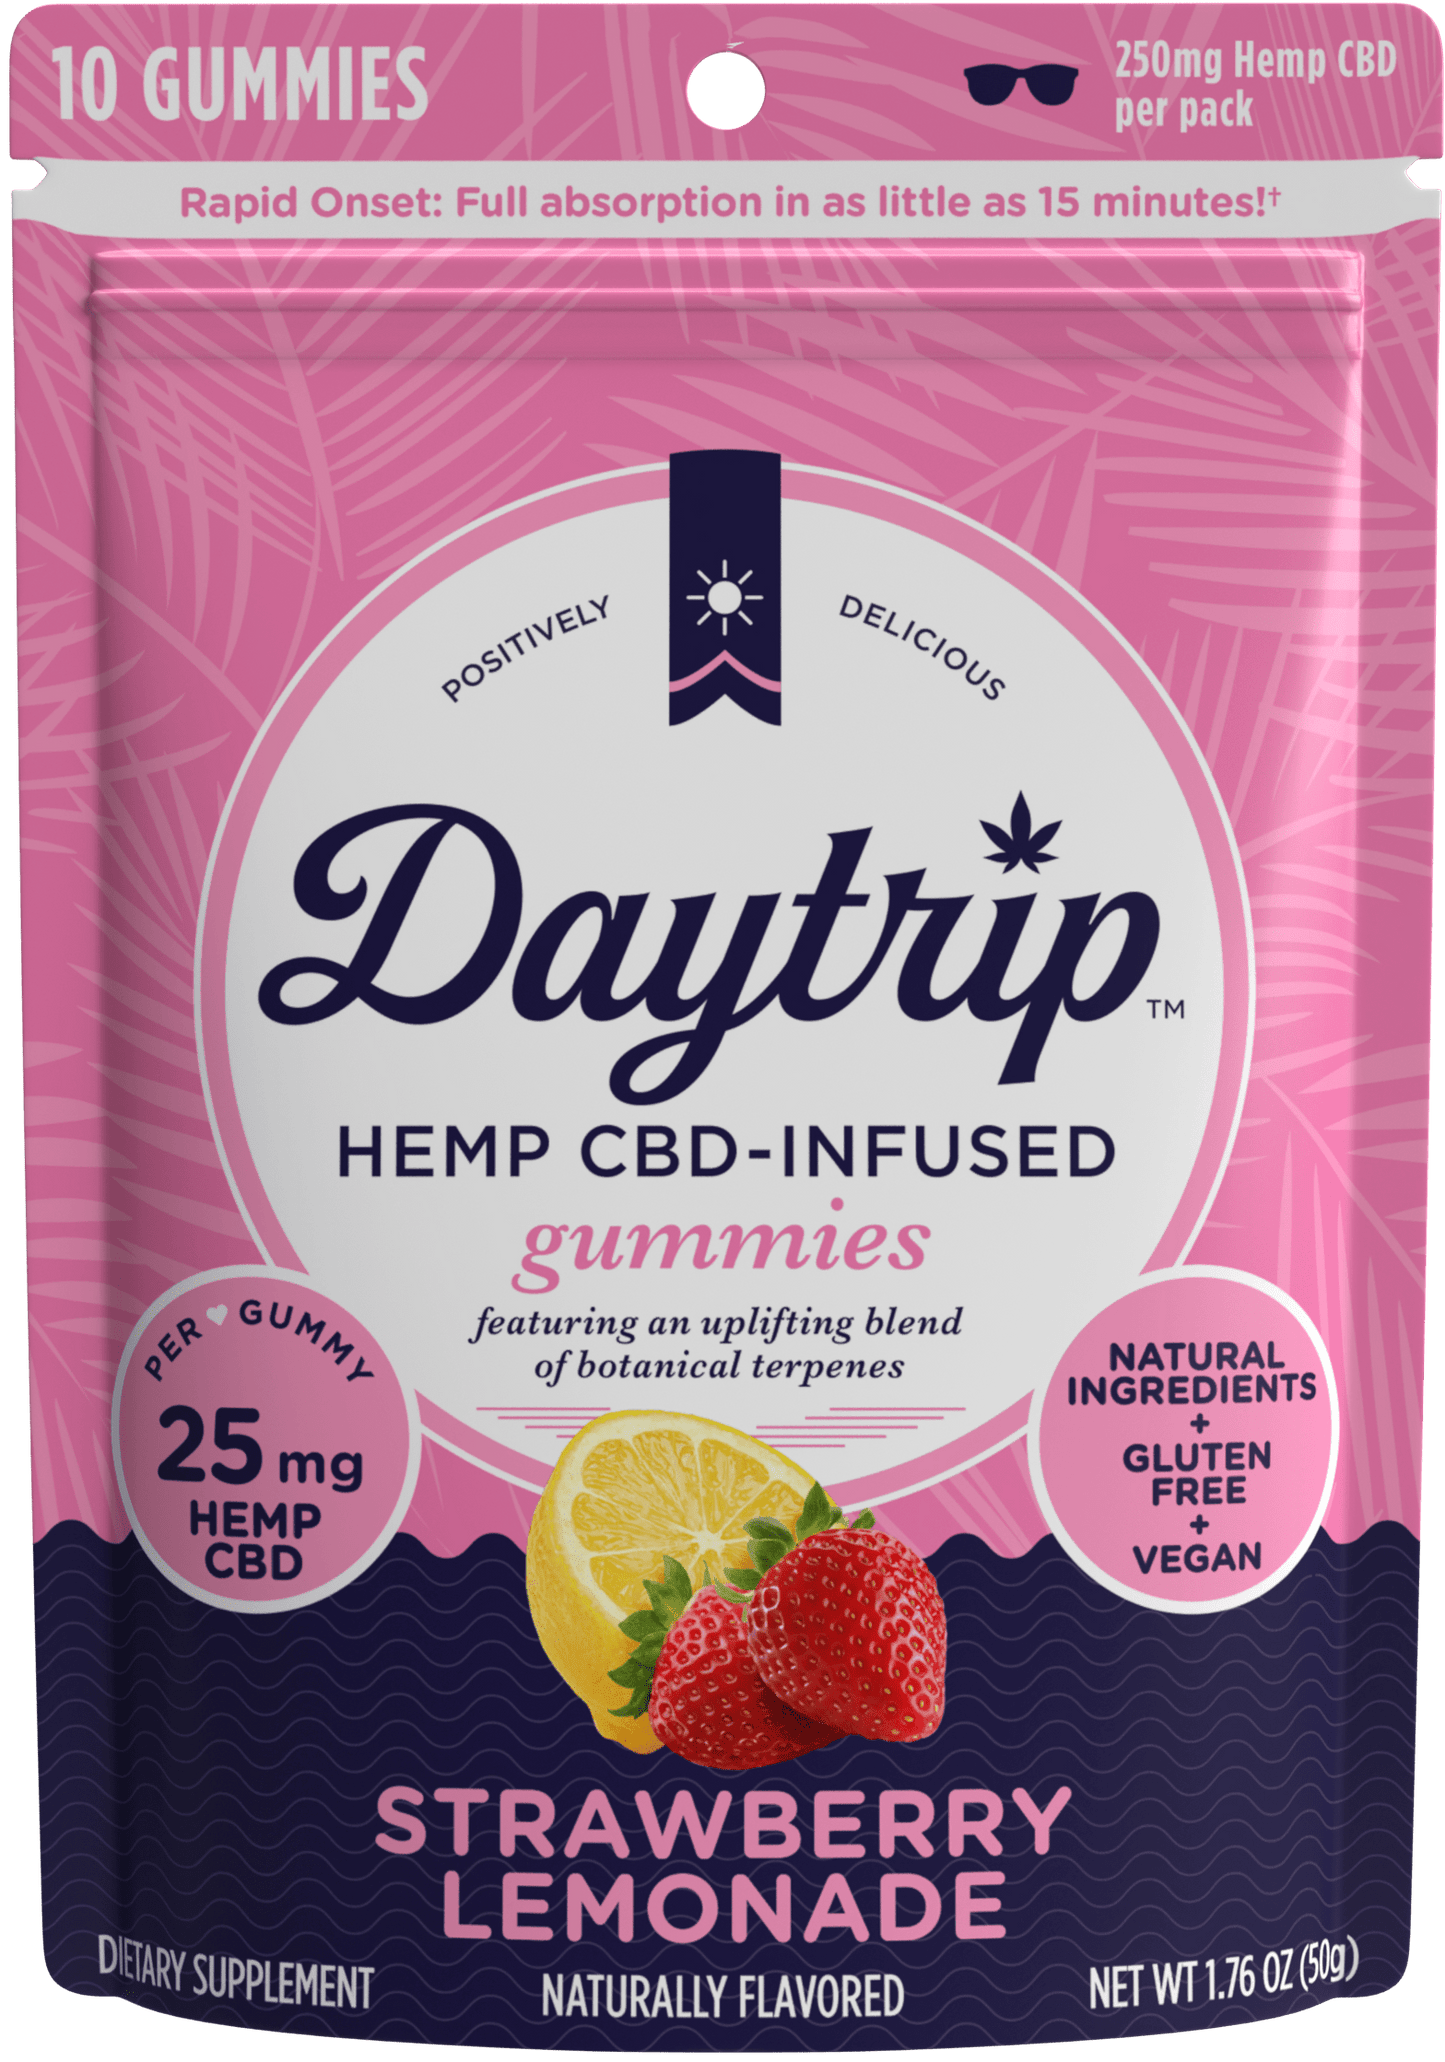 Packaging front render of Daytrip strawberry lemonade CBD-infused gummies